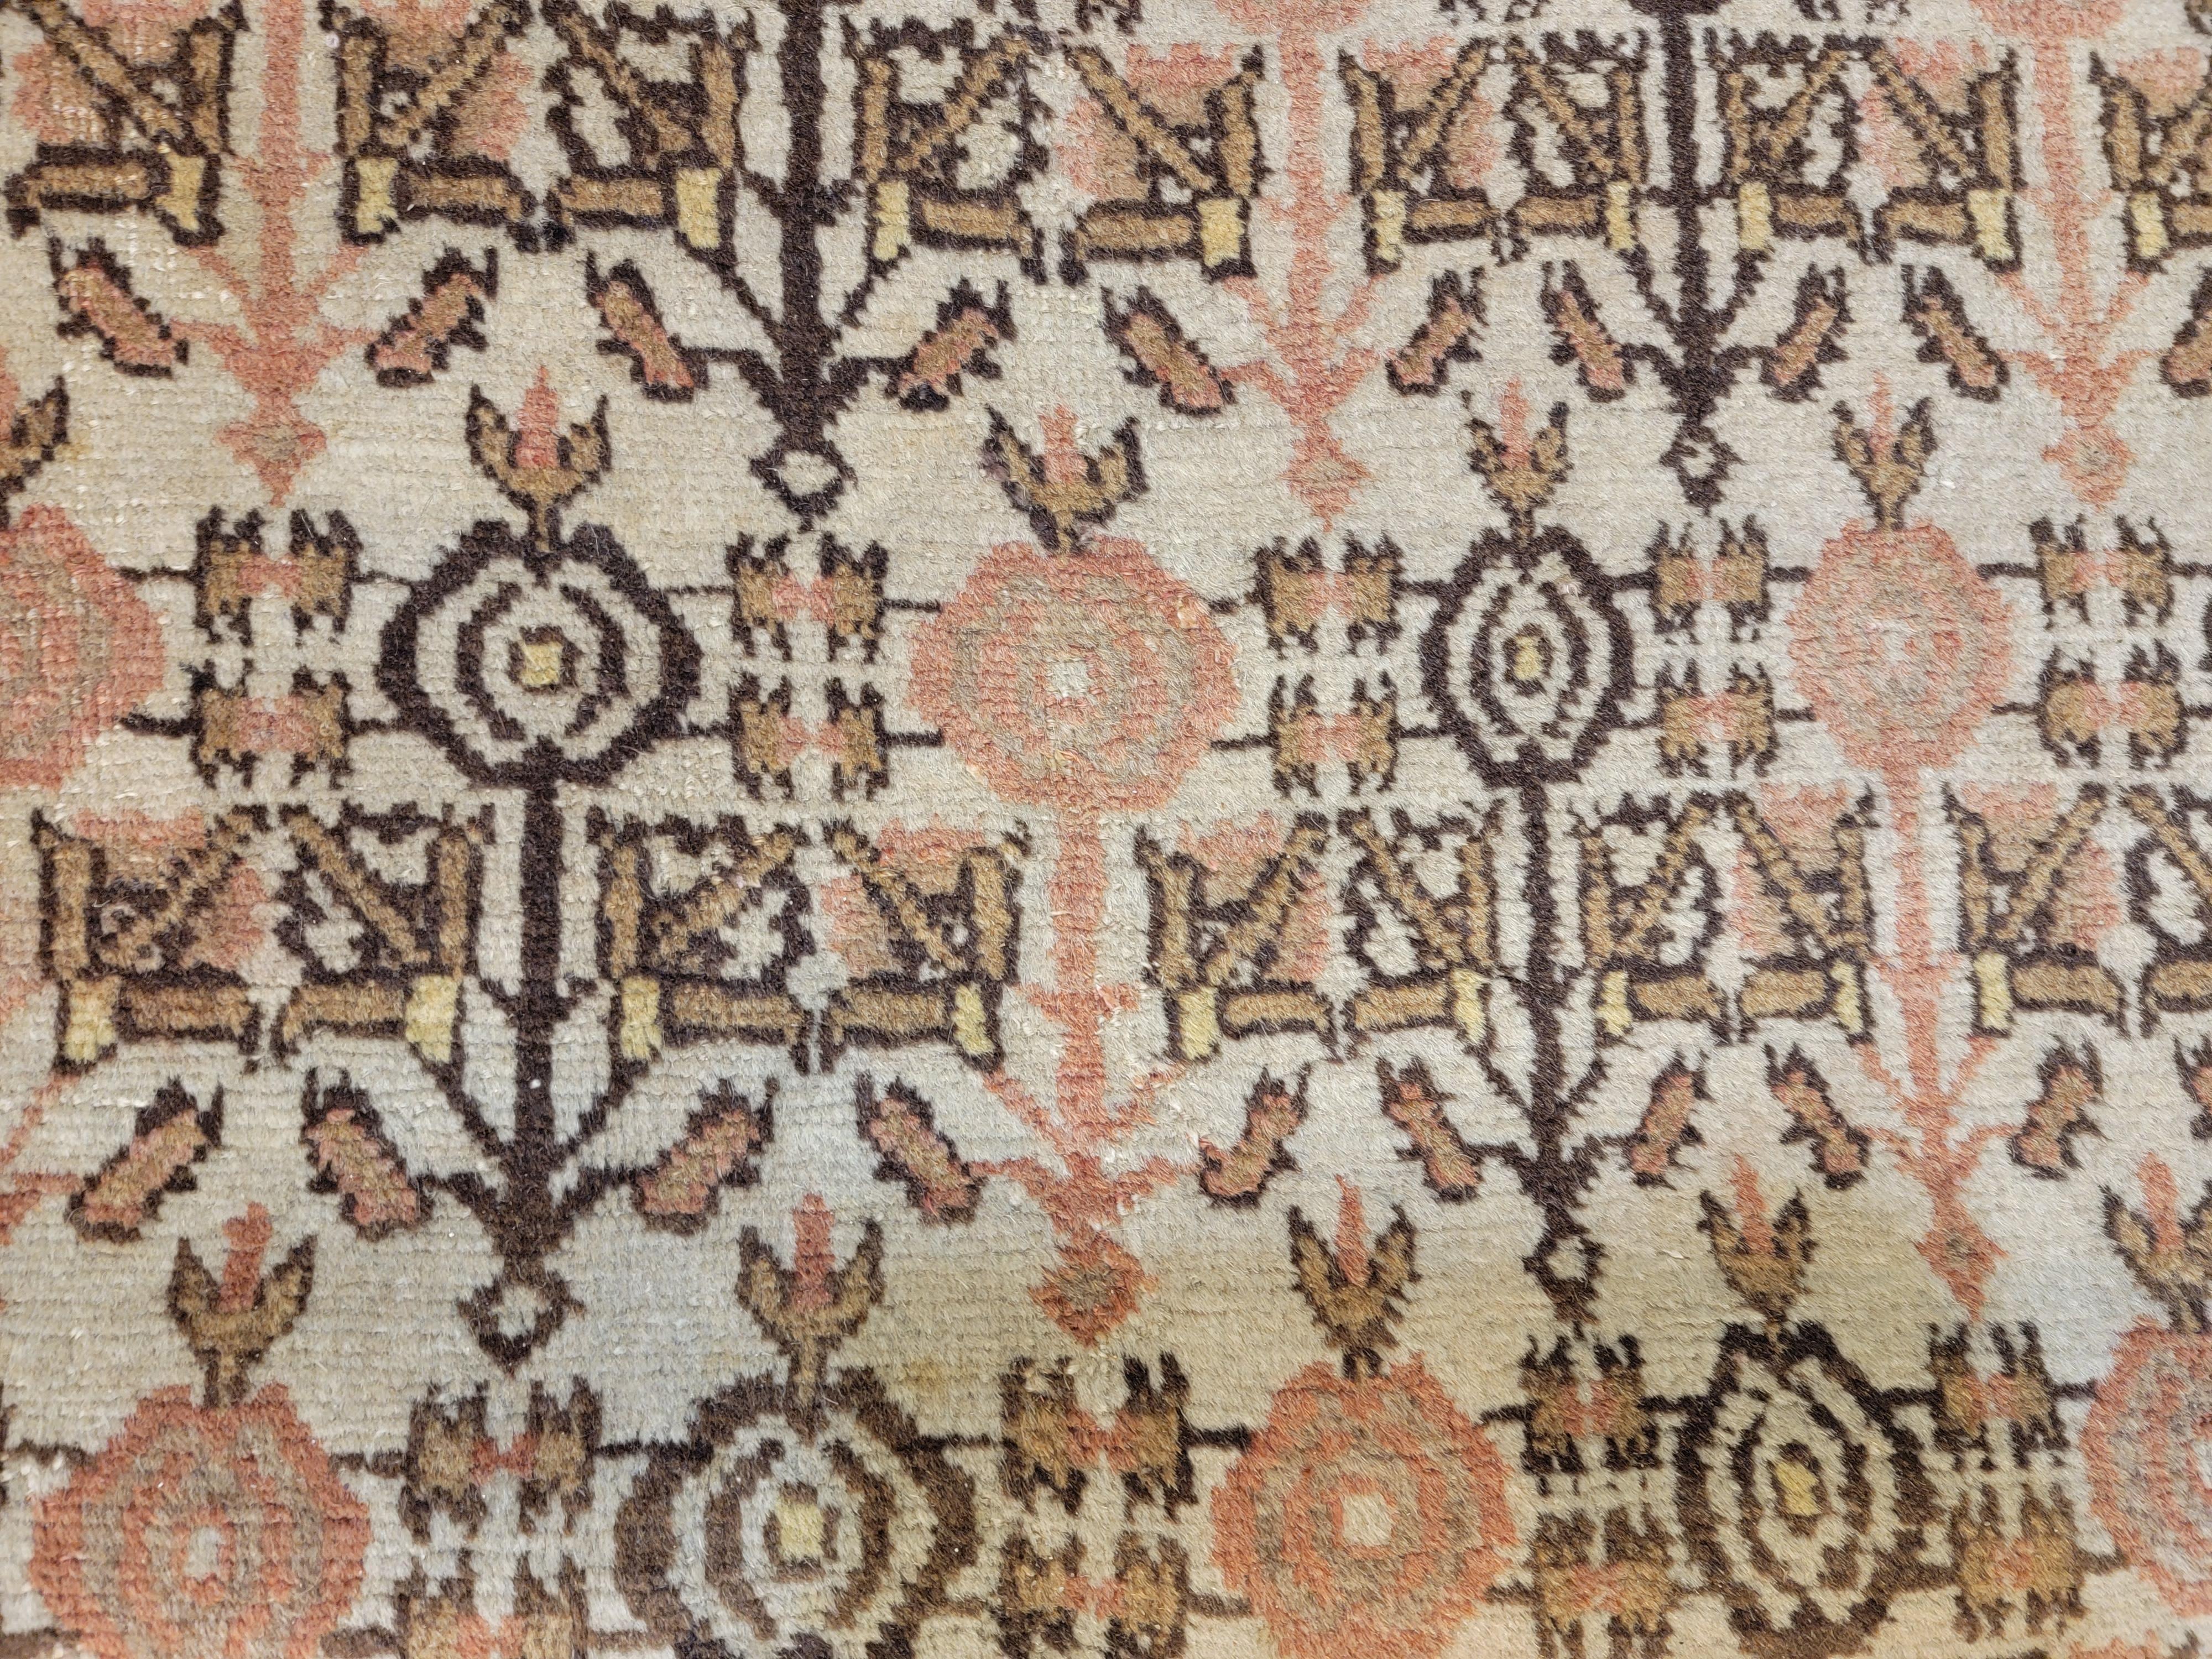 Originaler antiker persischer Tabriz Haji Jalili Teppich in einem für Haji Jalili Teppiche seltenen Allover-Muster. Es ist bekannt, dass Haji Jalili die beste Art von persischen Täbris-Teppichen sind. 

Größe: 10'4